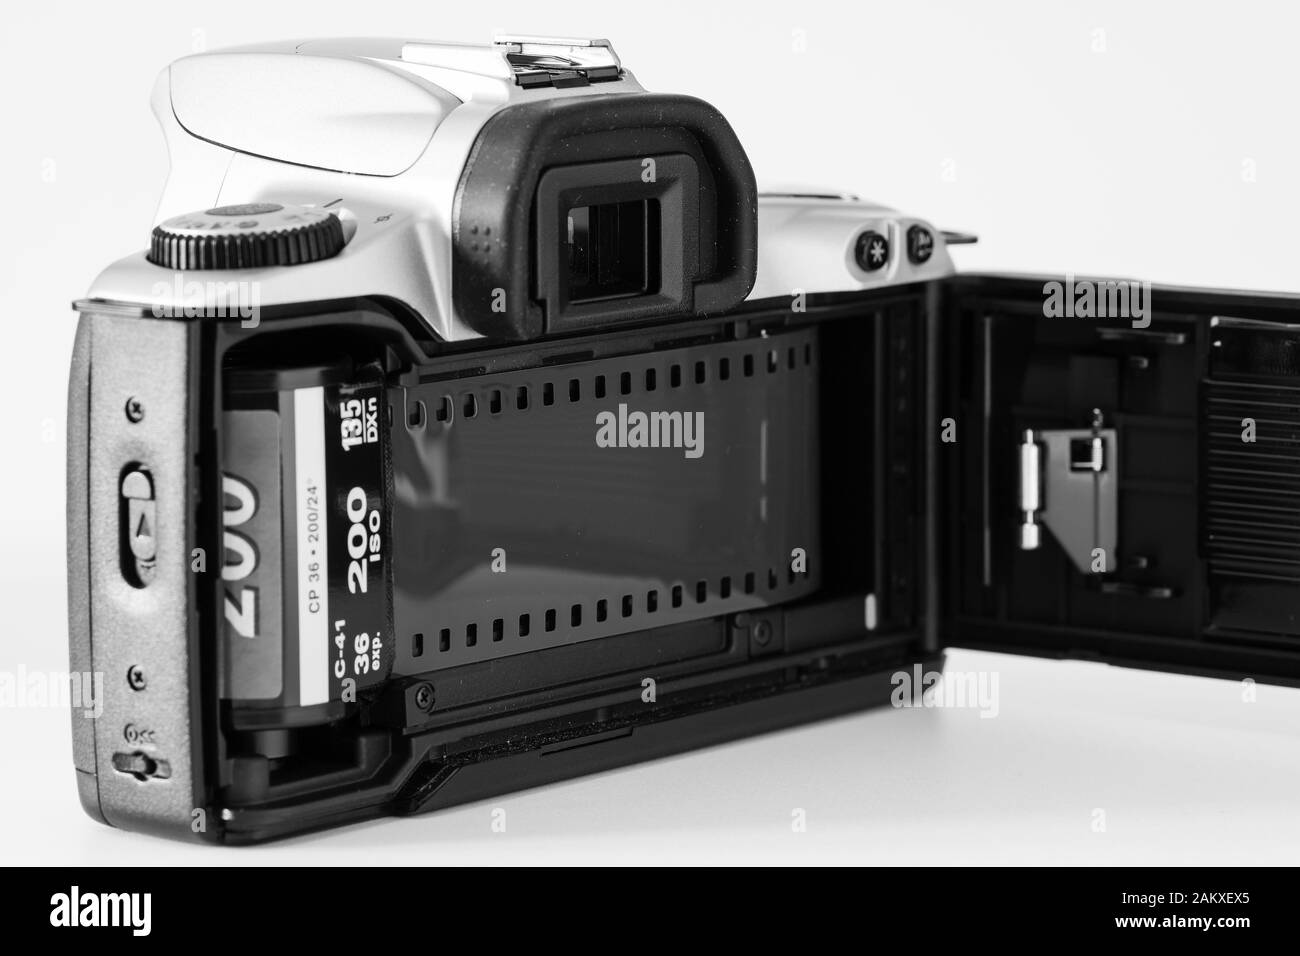 Parte posterior de una cámara Canon Eos300 con película insertada y compartimento abierto, sistema analógico. Foto de stock